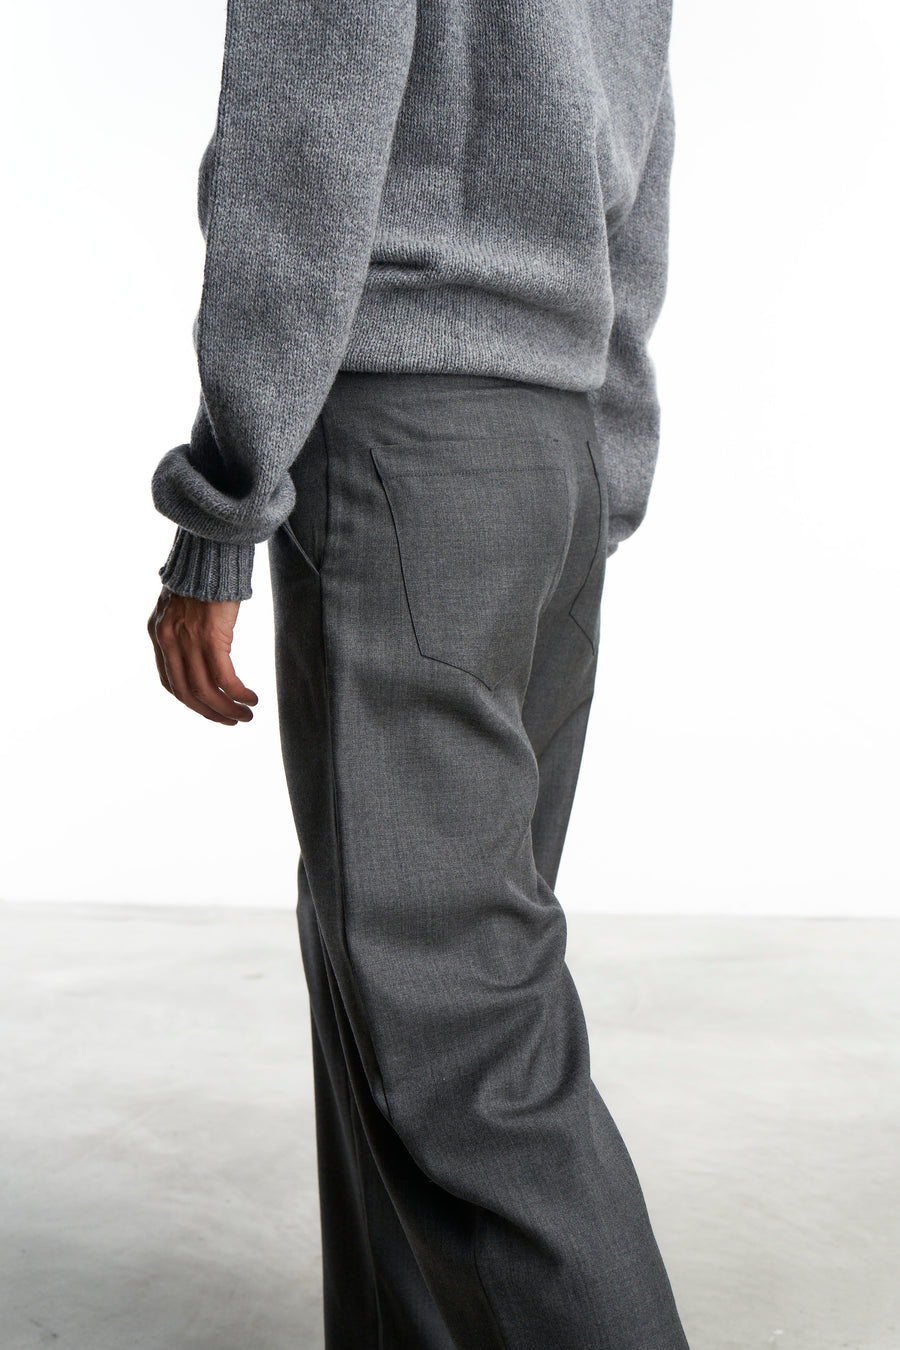 Pantalone Ettore |  Fresco Di Lana grigio medio